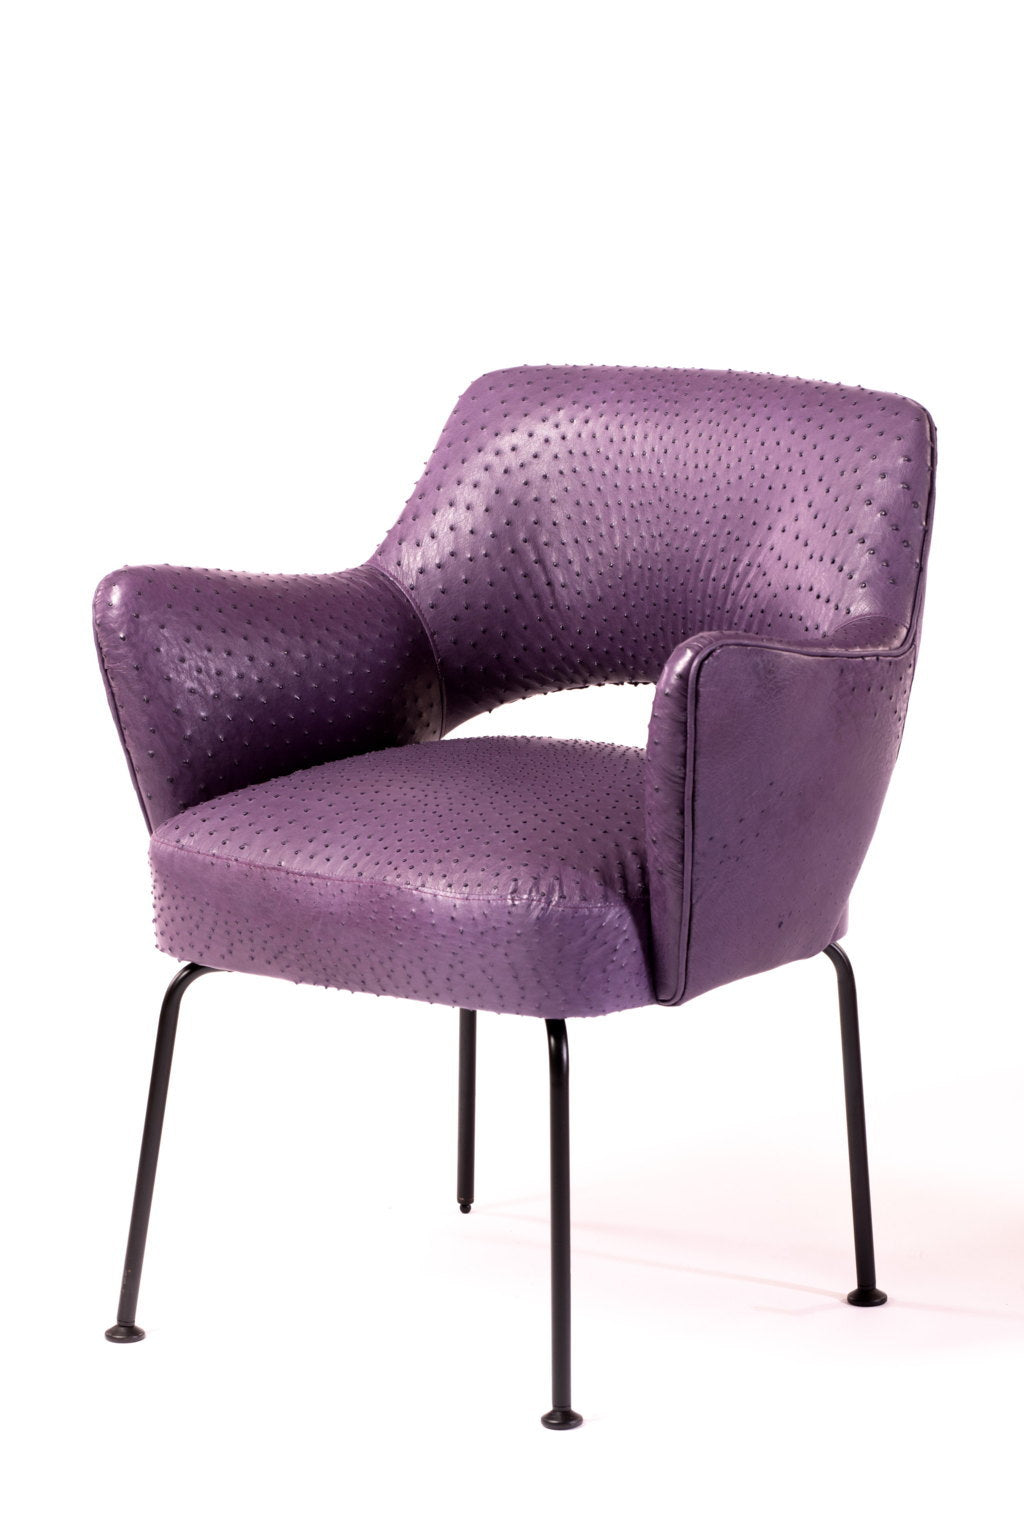 Mobiltecnica design ostrich armchair